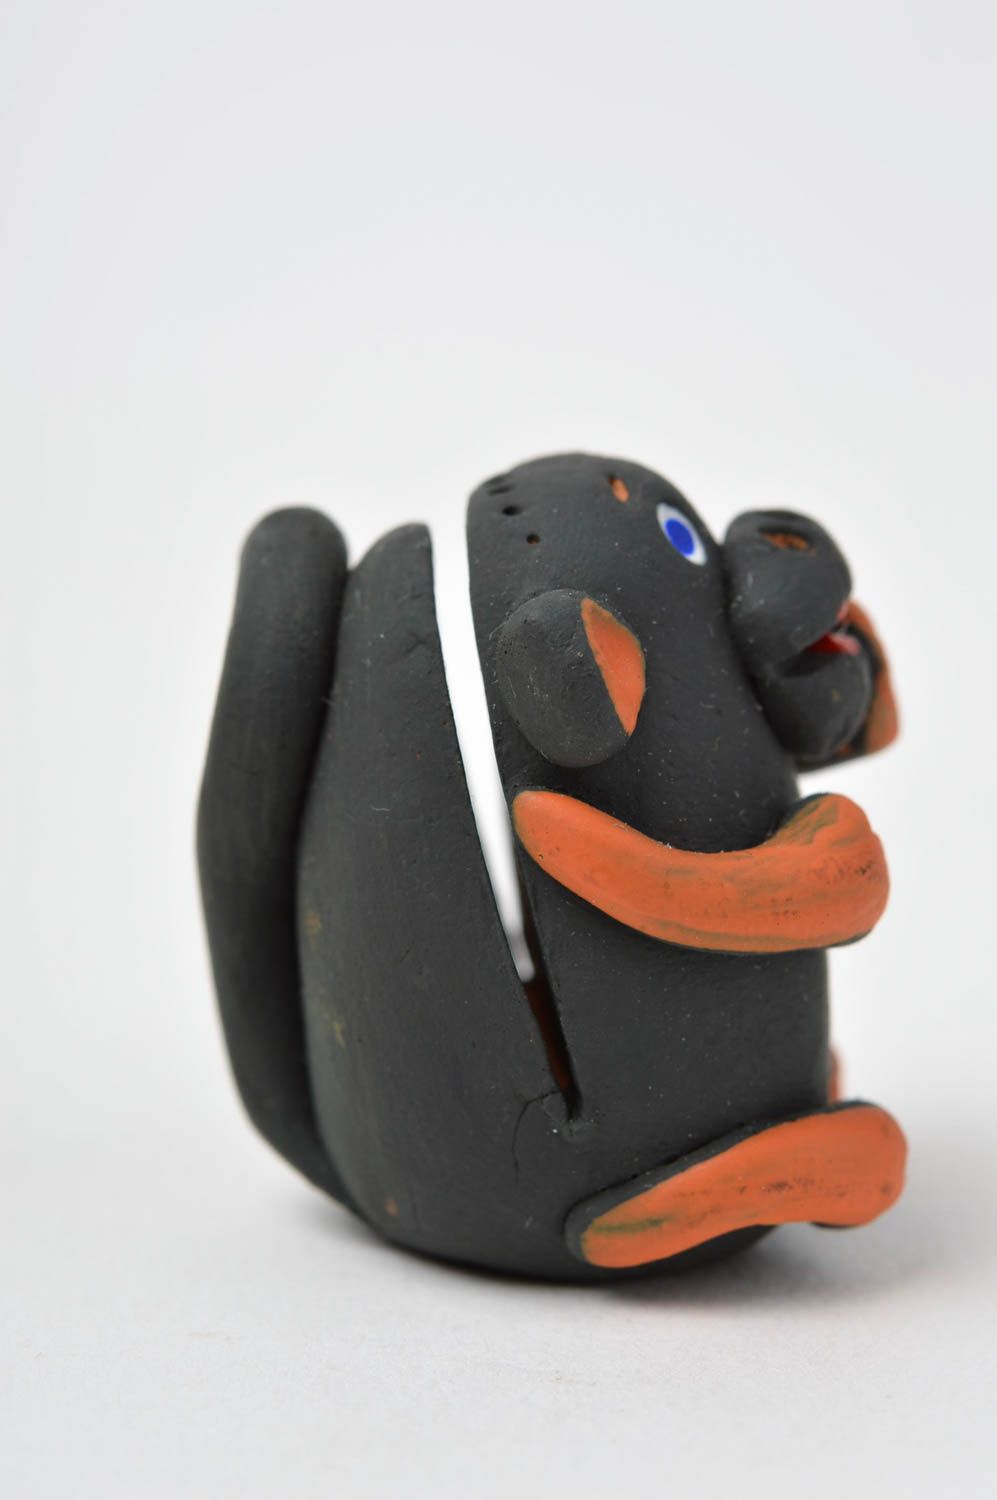 Визитница ручной работы керамический декор настольная подставка обезьянка фото 3